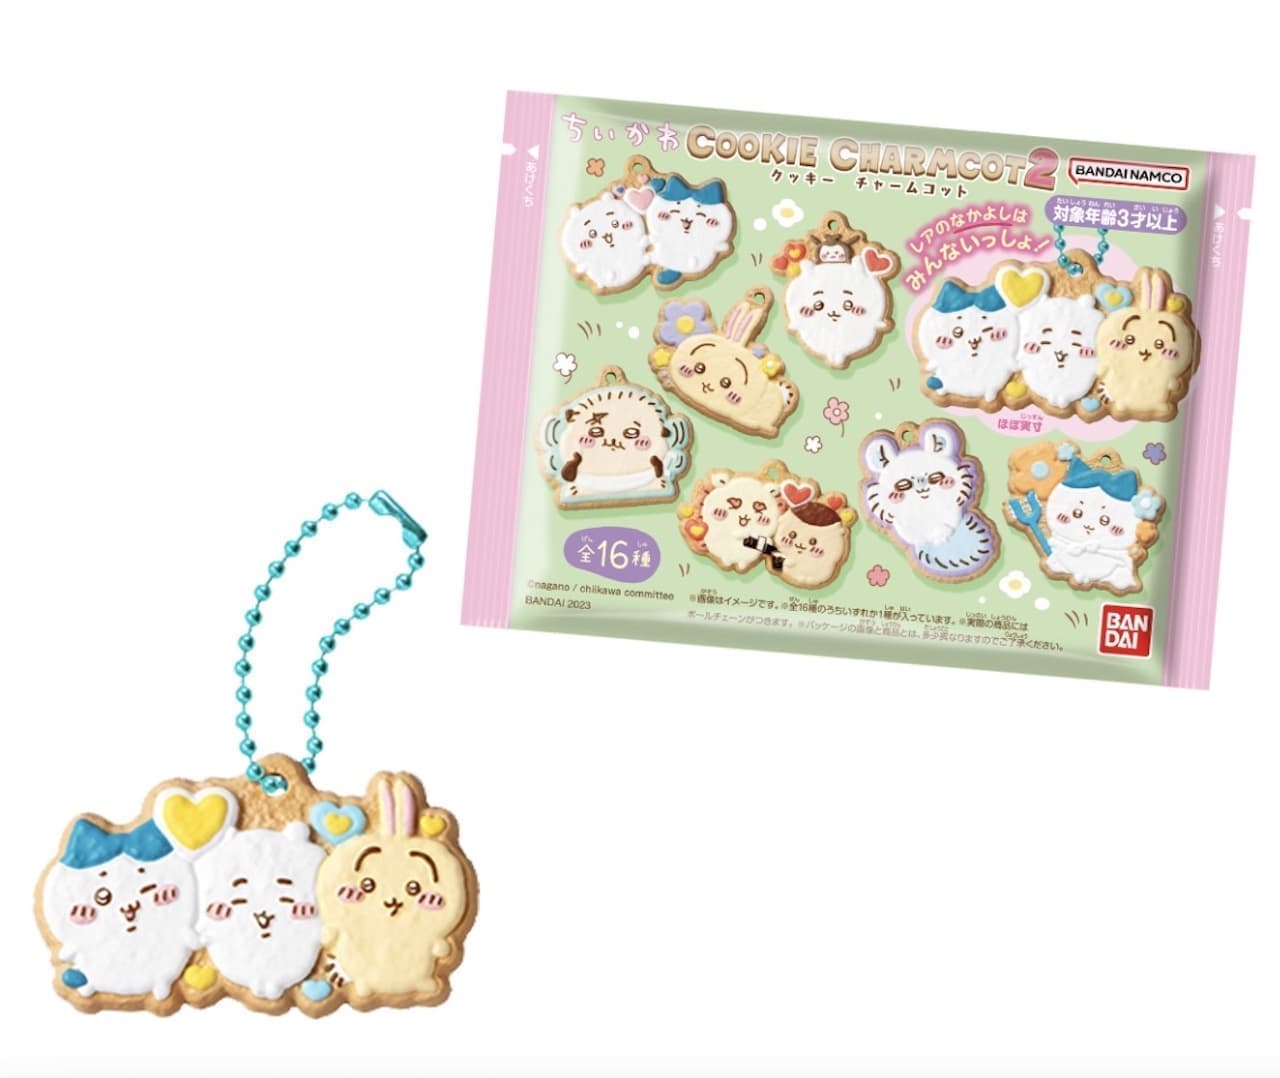 Bandai Candy Division "Chi Kawa Cookie Charm Cotton 2